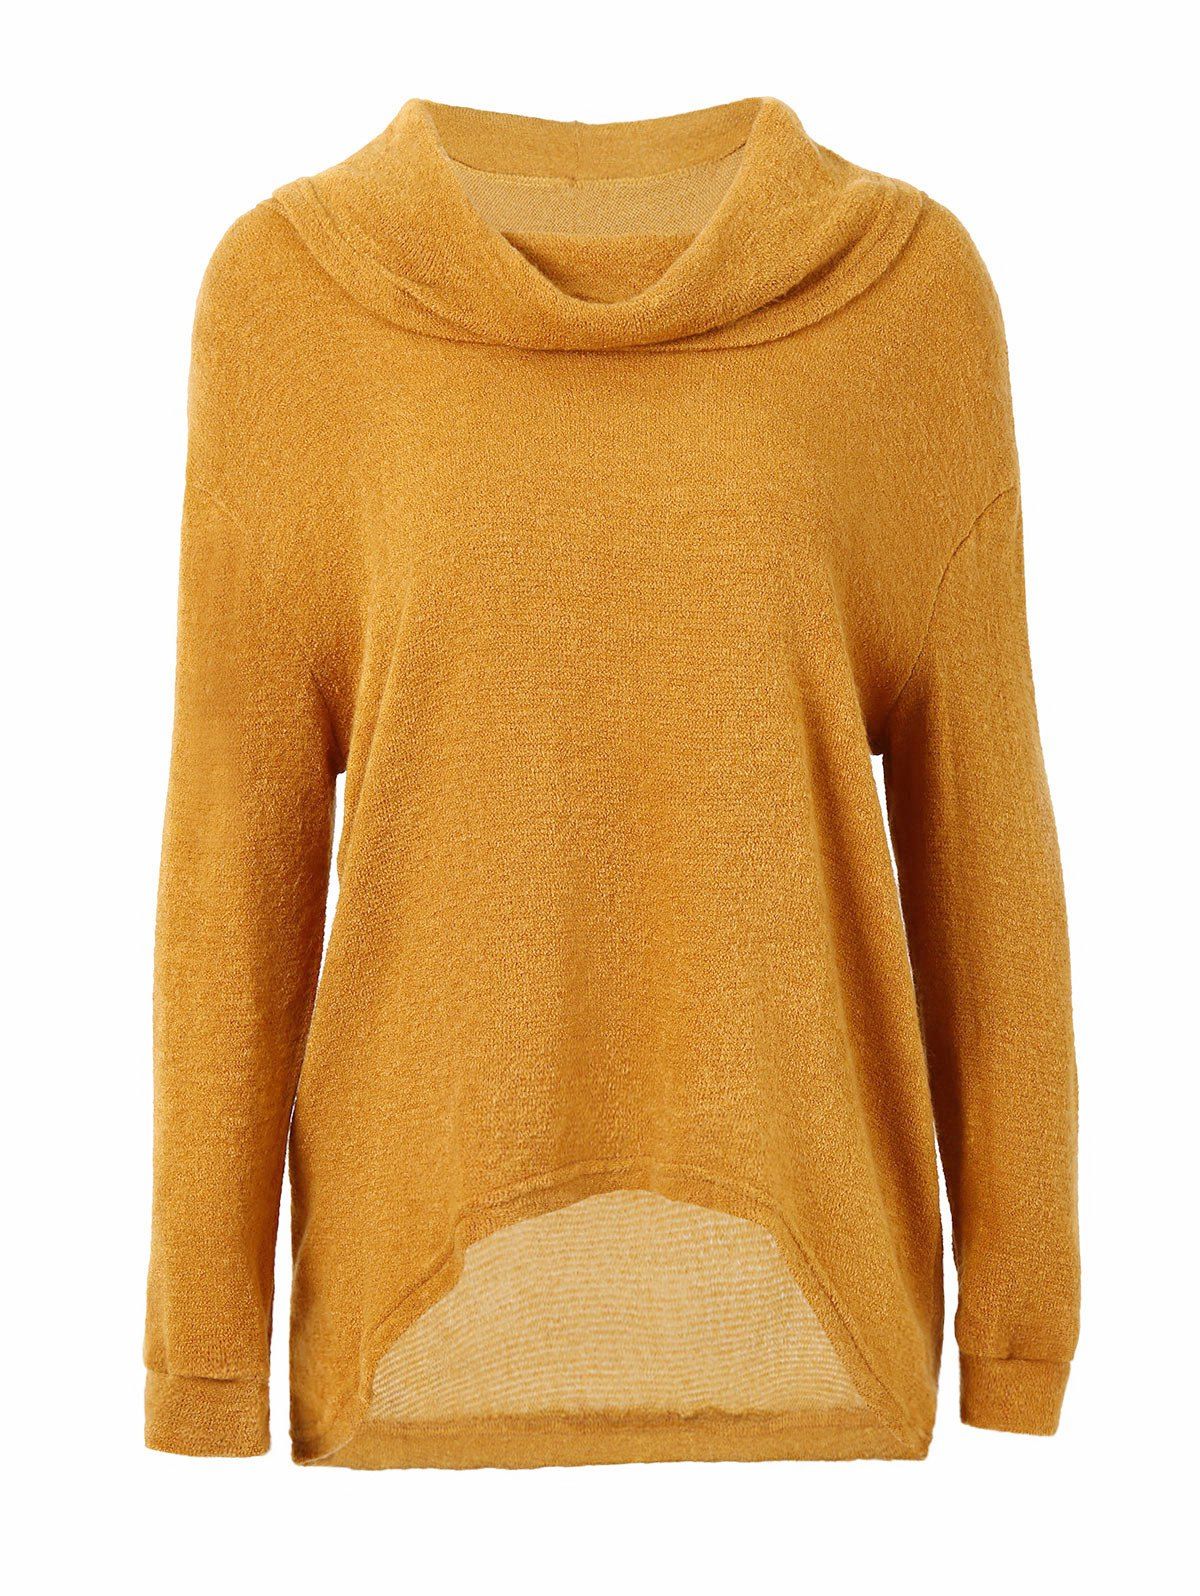 Sale Cowl Neck Drop Shoulder Sweater  